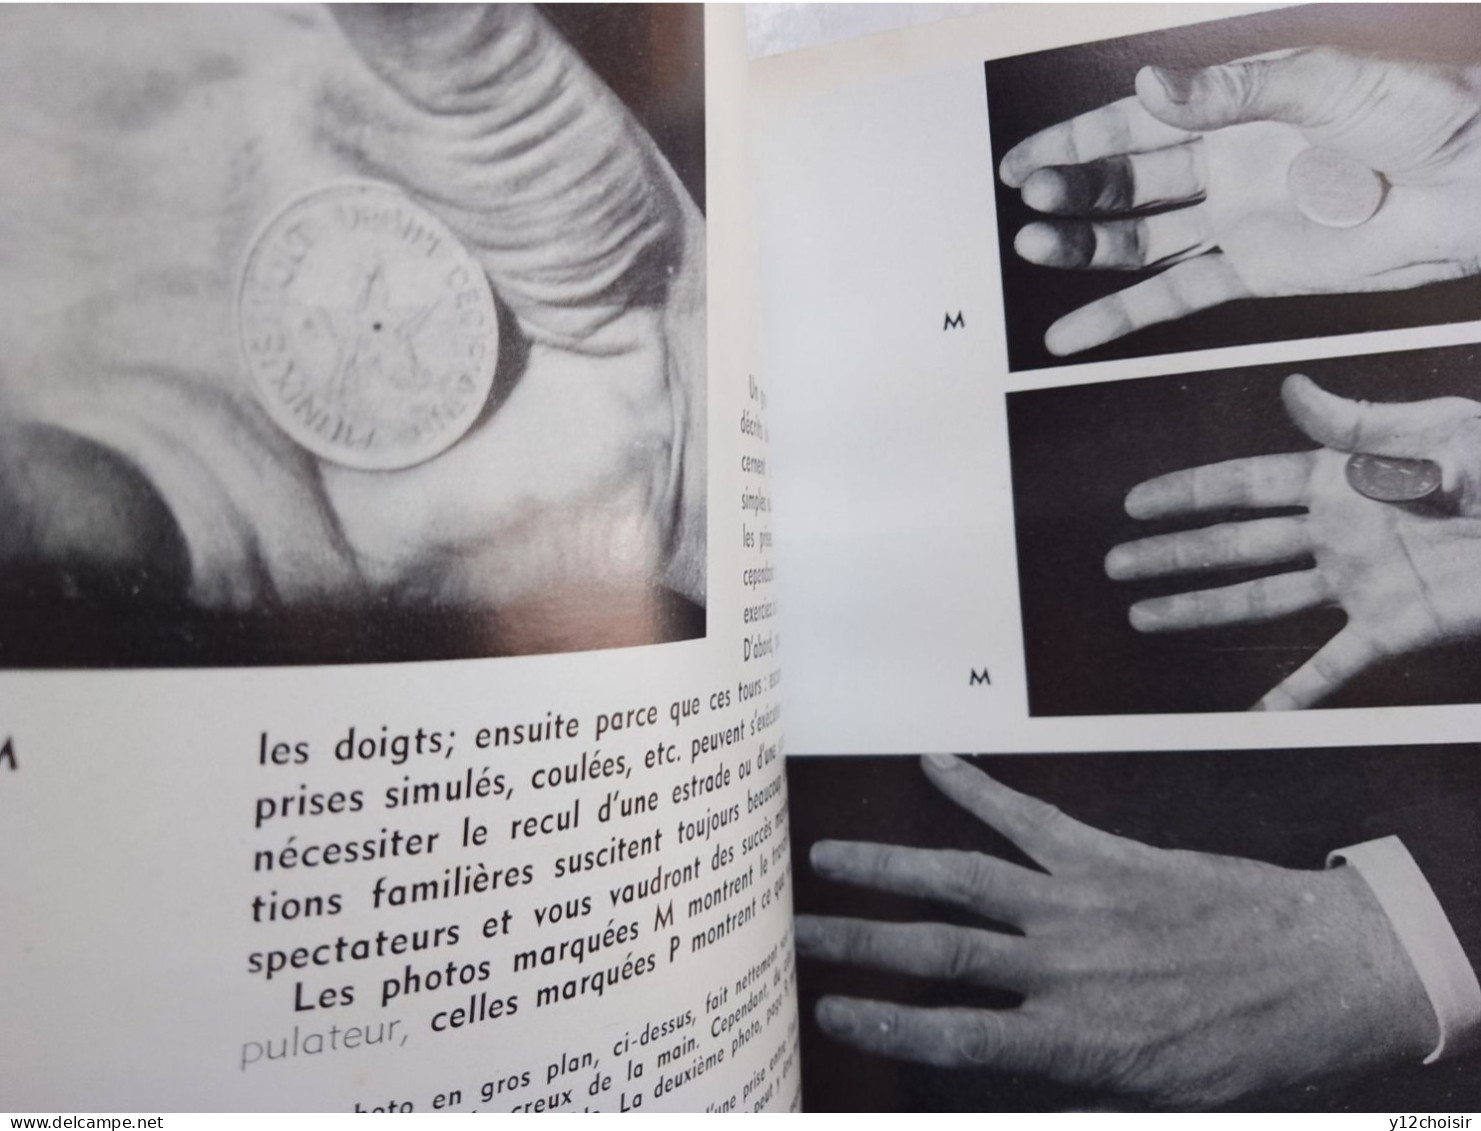 Livre La Prestidigitation . Apprenez Vous-même . 154 Photos . Eyrolles éditeur Paris - Sonstige & Ohne Zuordnung